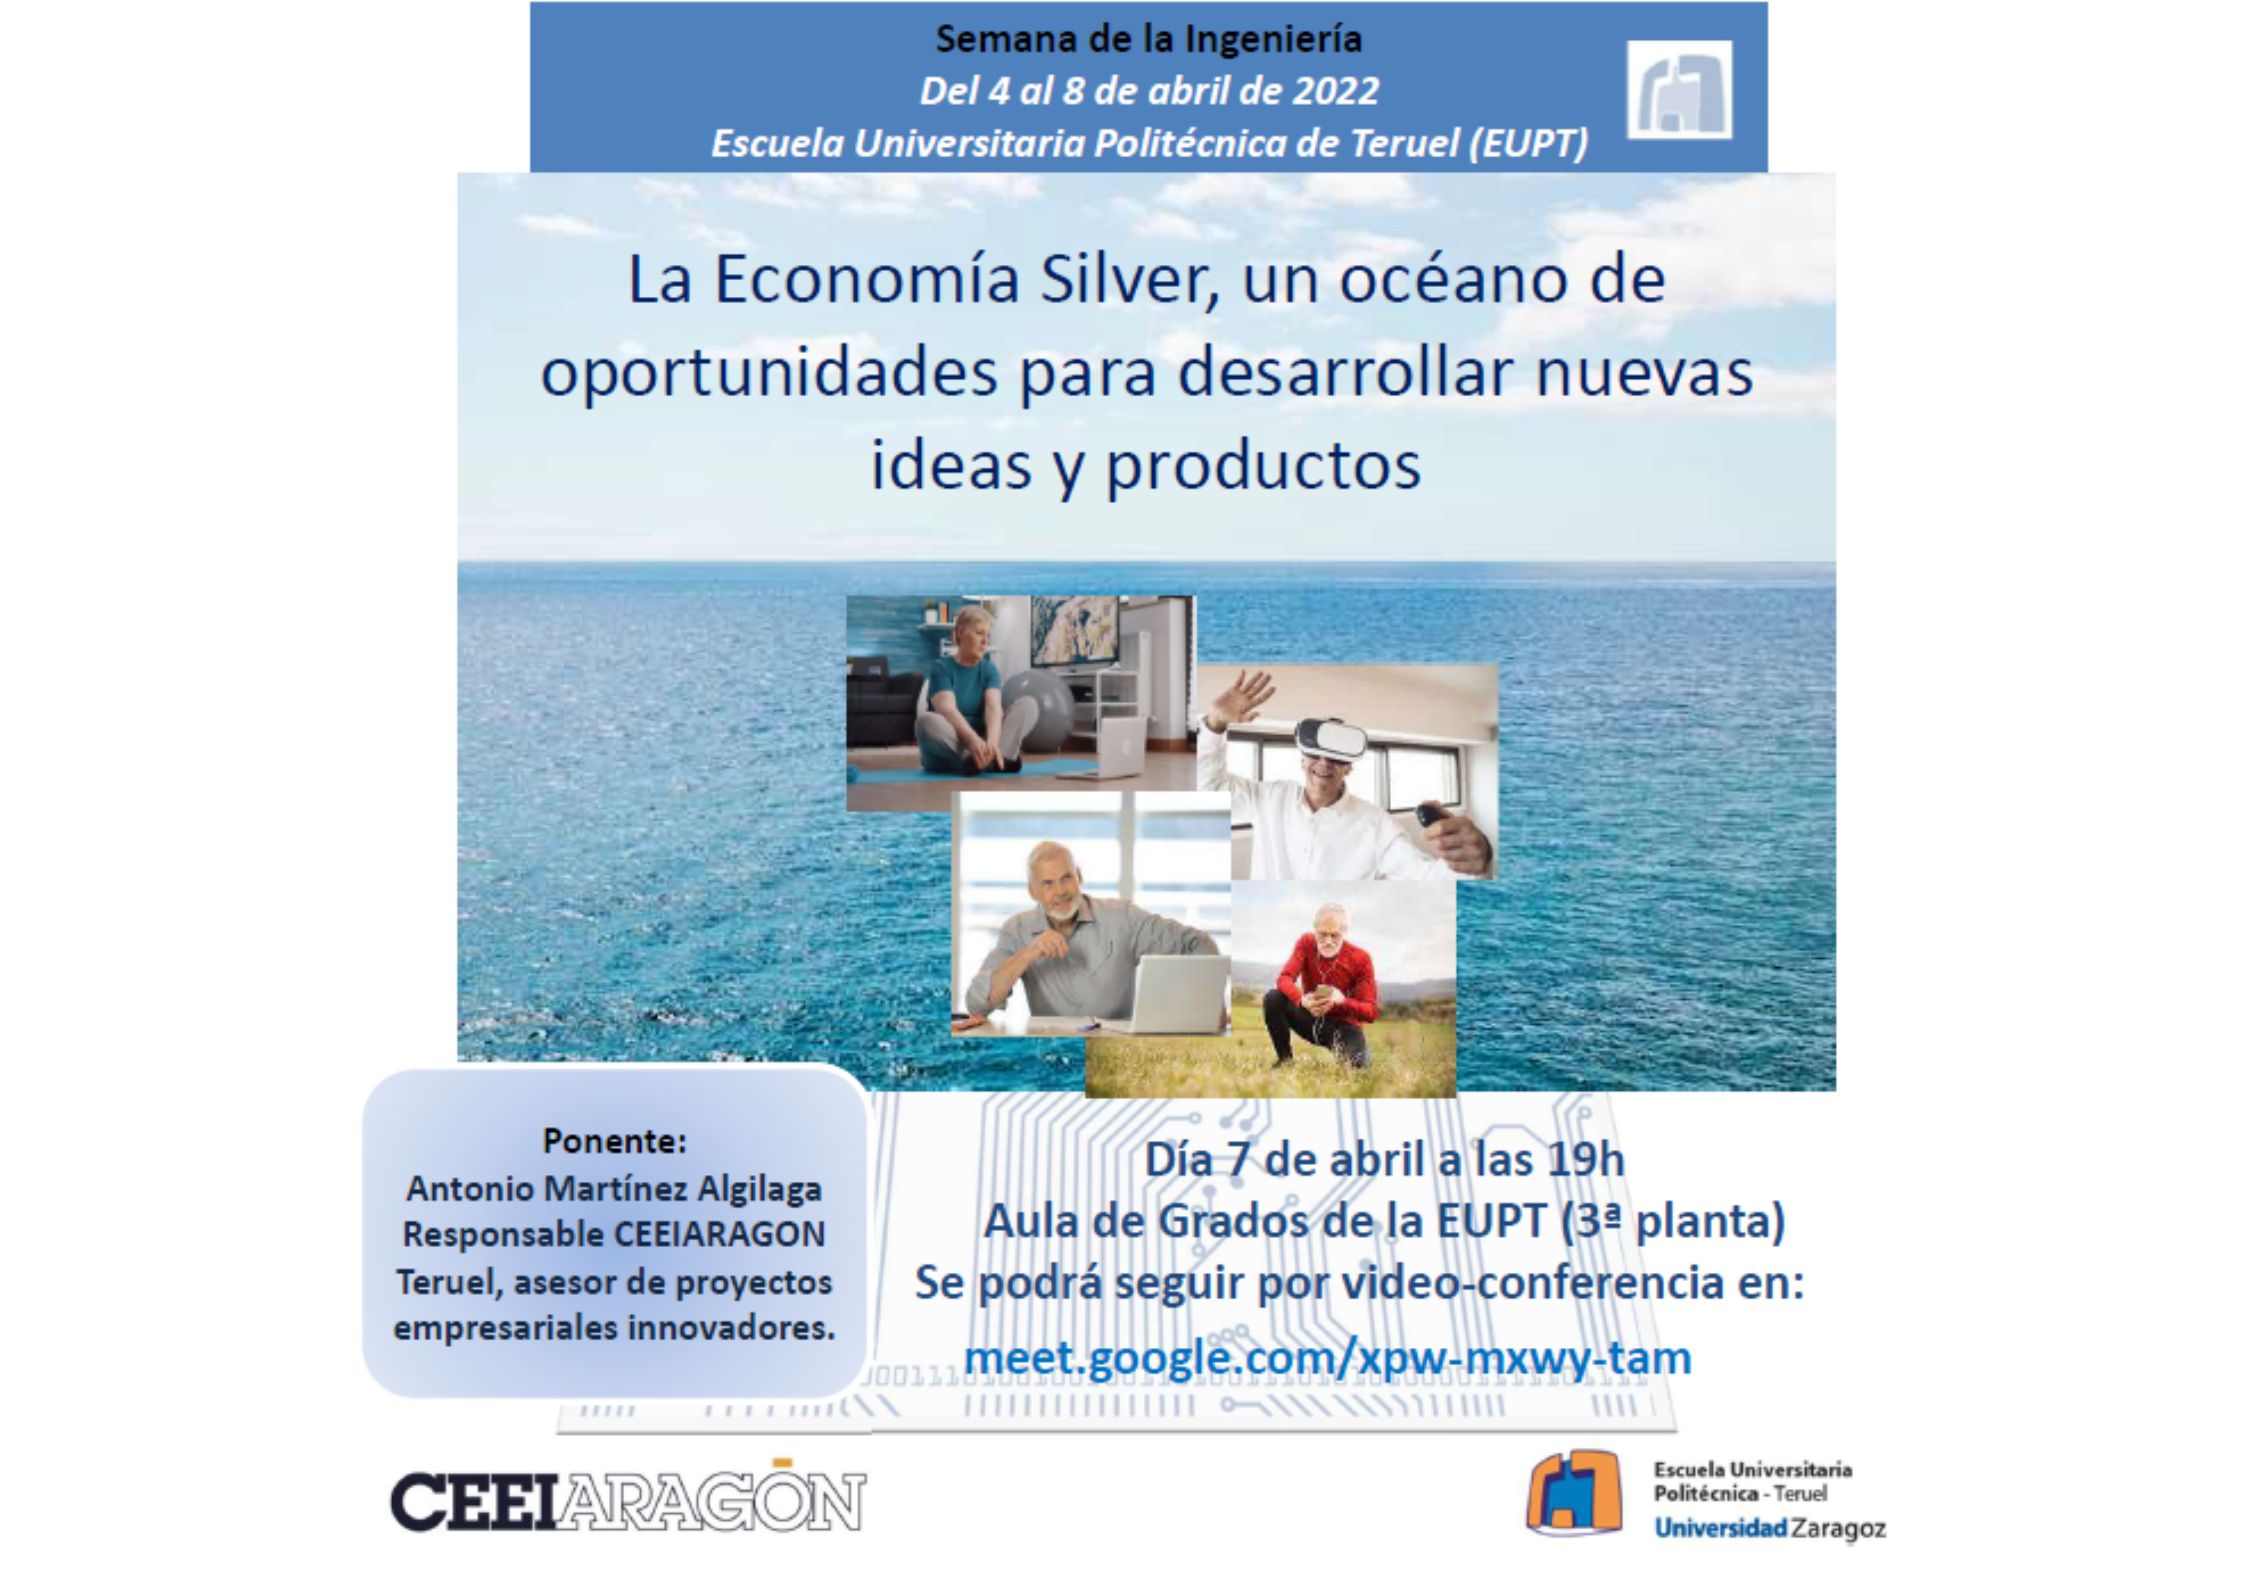 Conferencia “La Economía Silver, un océano de oportunidades para desarrollar nuevas ideas y productos”